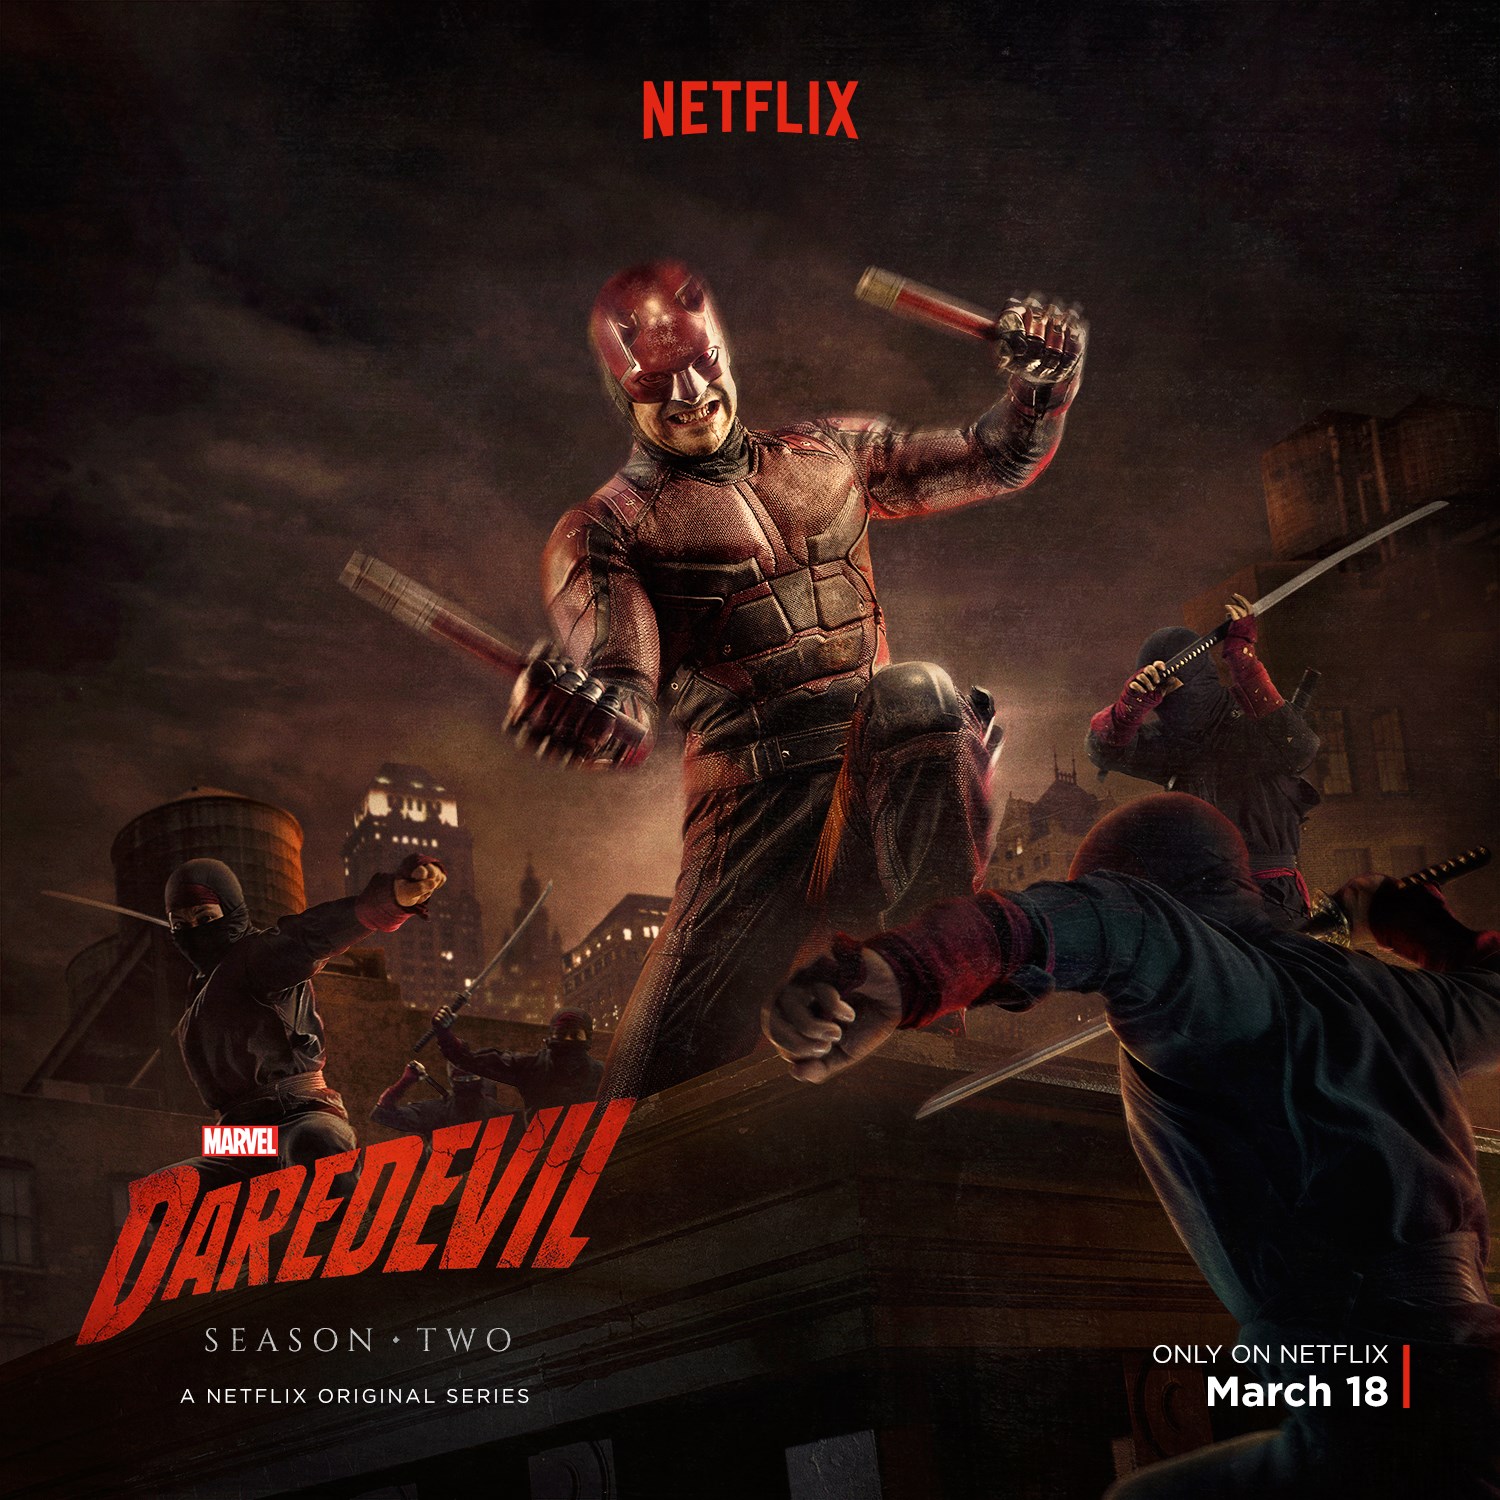 Marvel's Daredevil Season Two